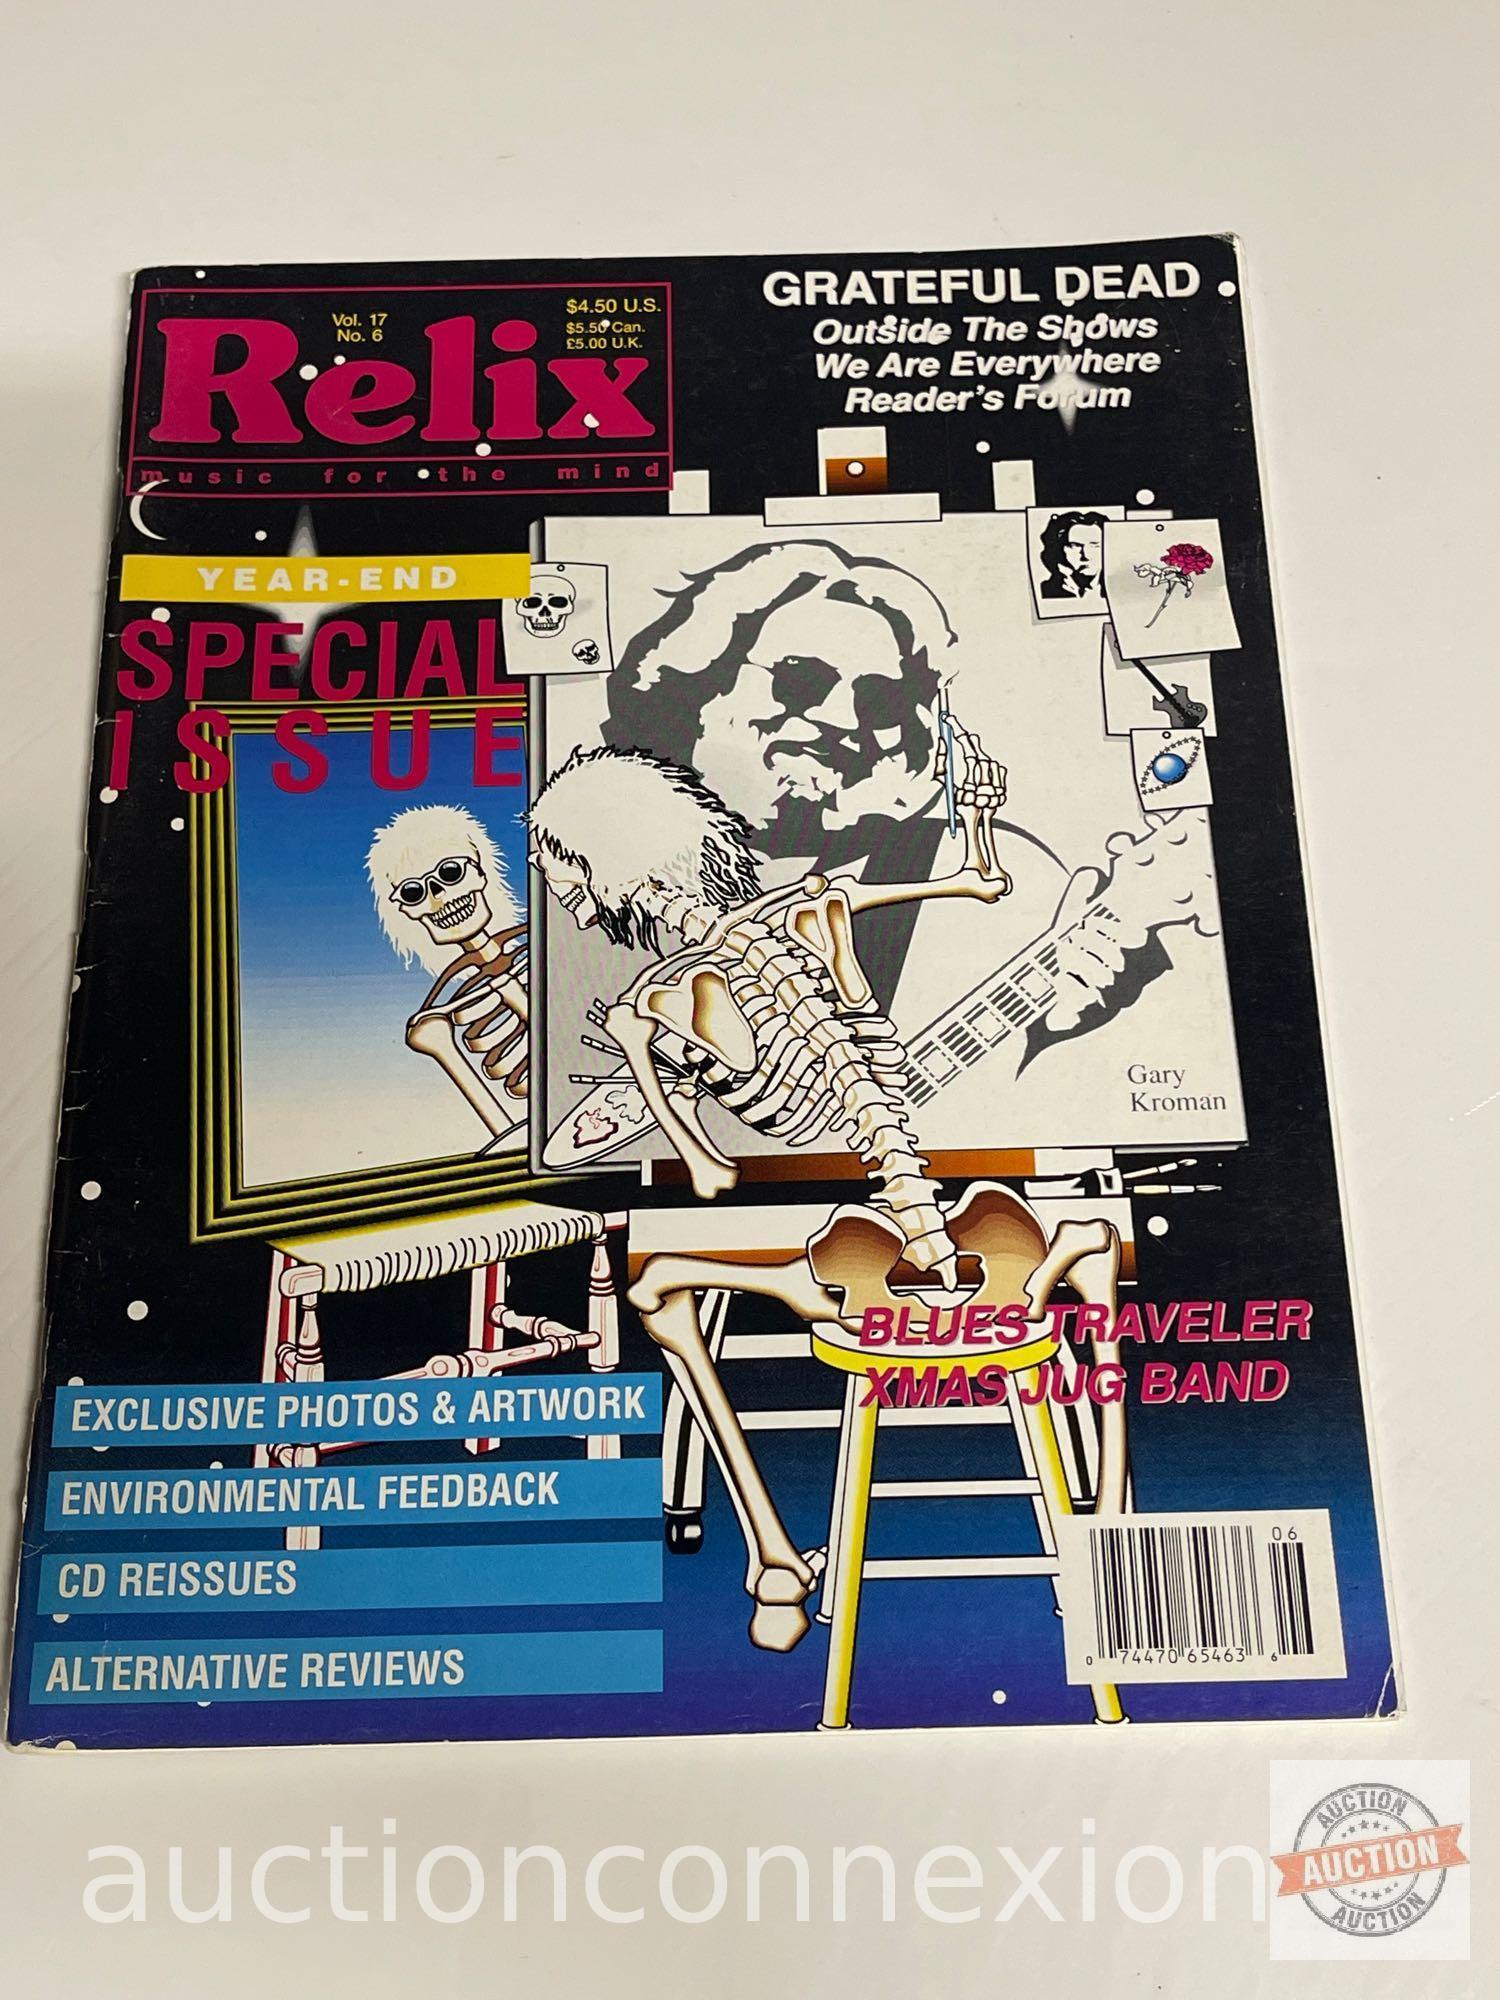 Ephemera - 4 Relix Magazines, Vol. 17#3, Vol. 17#6, Vol. 18#5 Grateful Dead & Vol. 20#2 Jerry Garcia